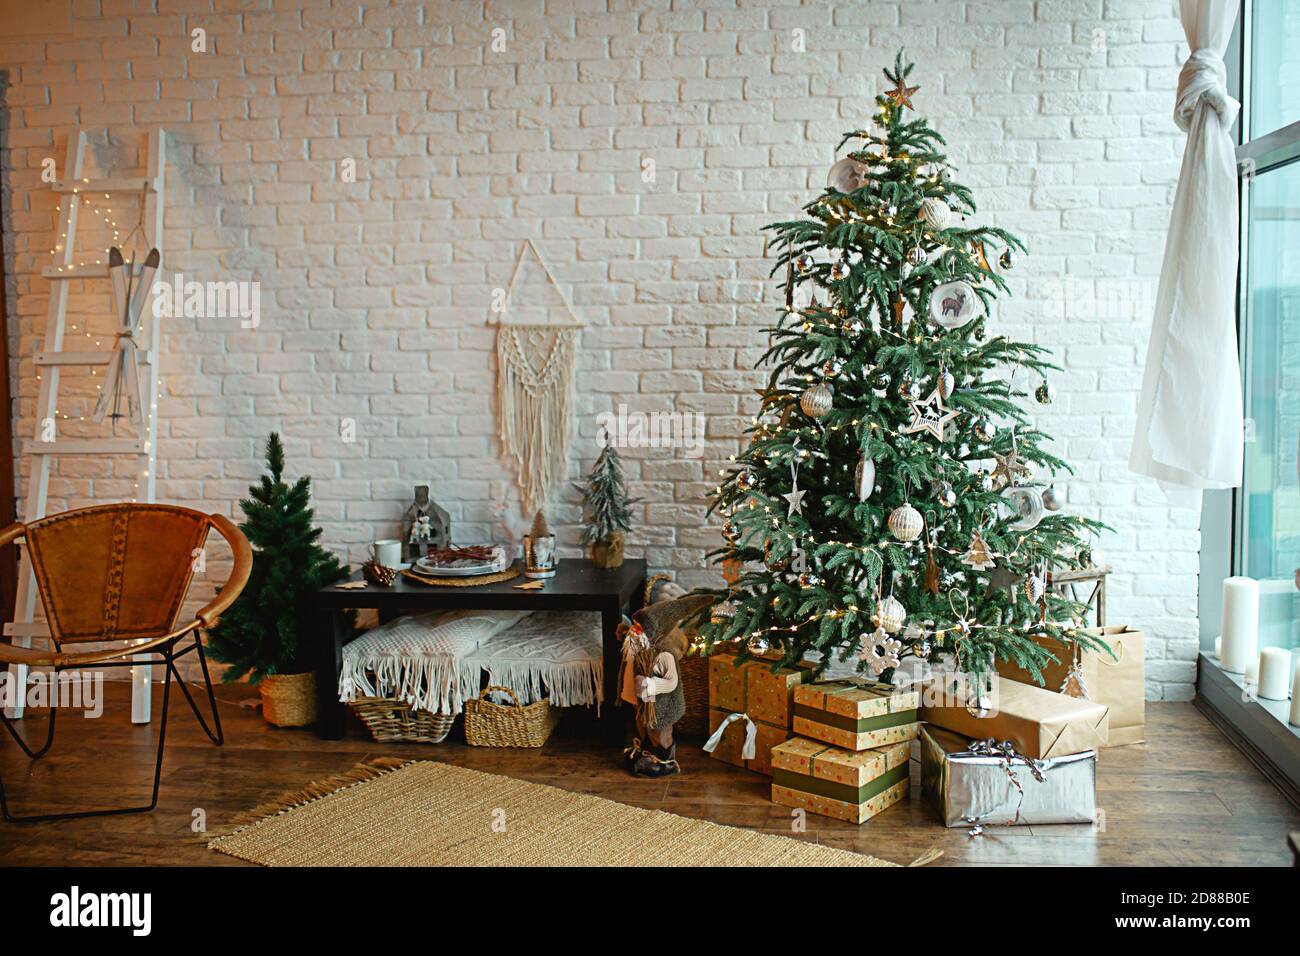 Interni natalizi nello stile di un loft scandinavo: Cemento grigio, decorazioni in legno, lampade incandescenti, albero di Natale artificiale realistico. Nuovo e accogliente Foto Stock